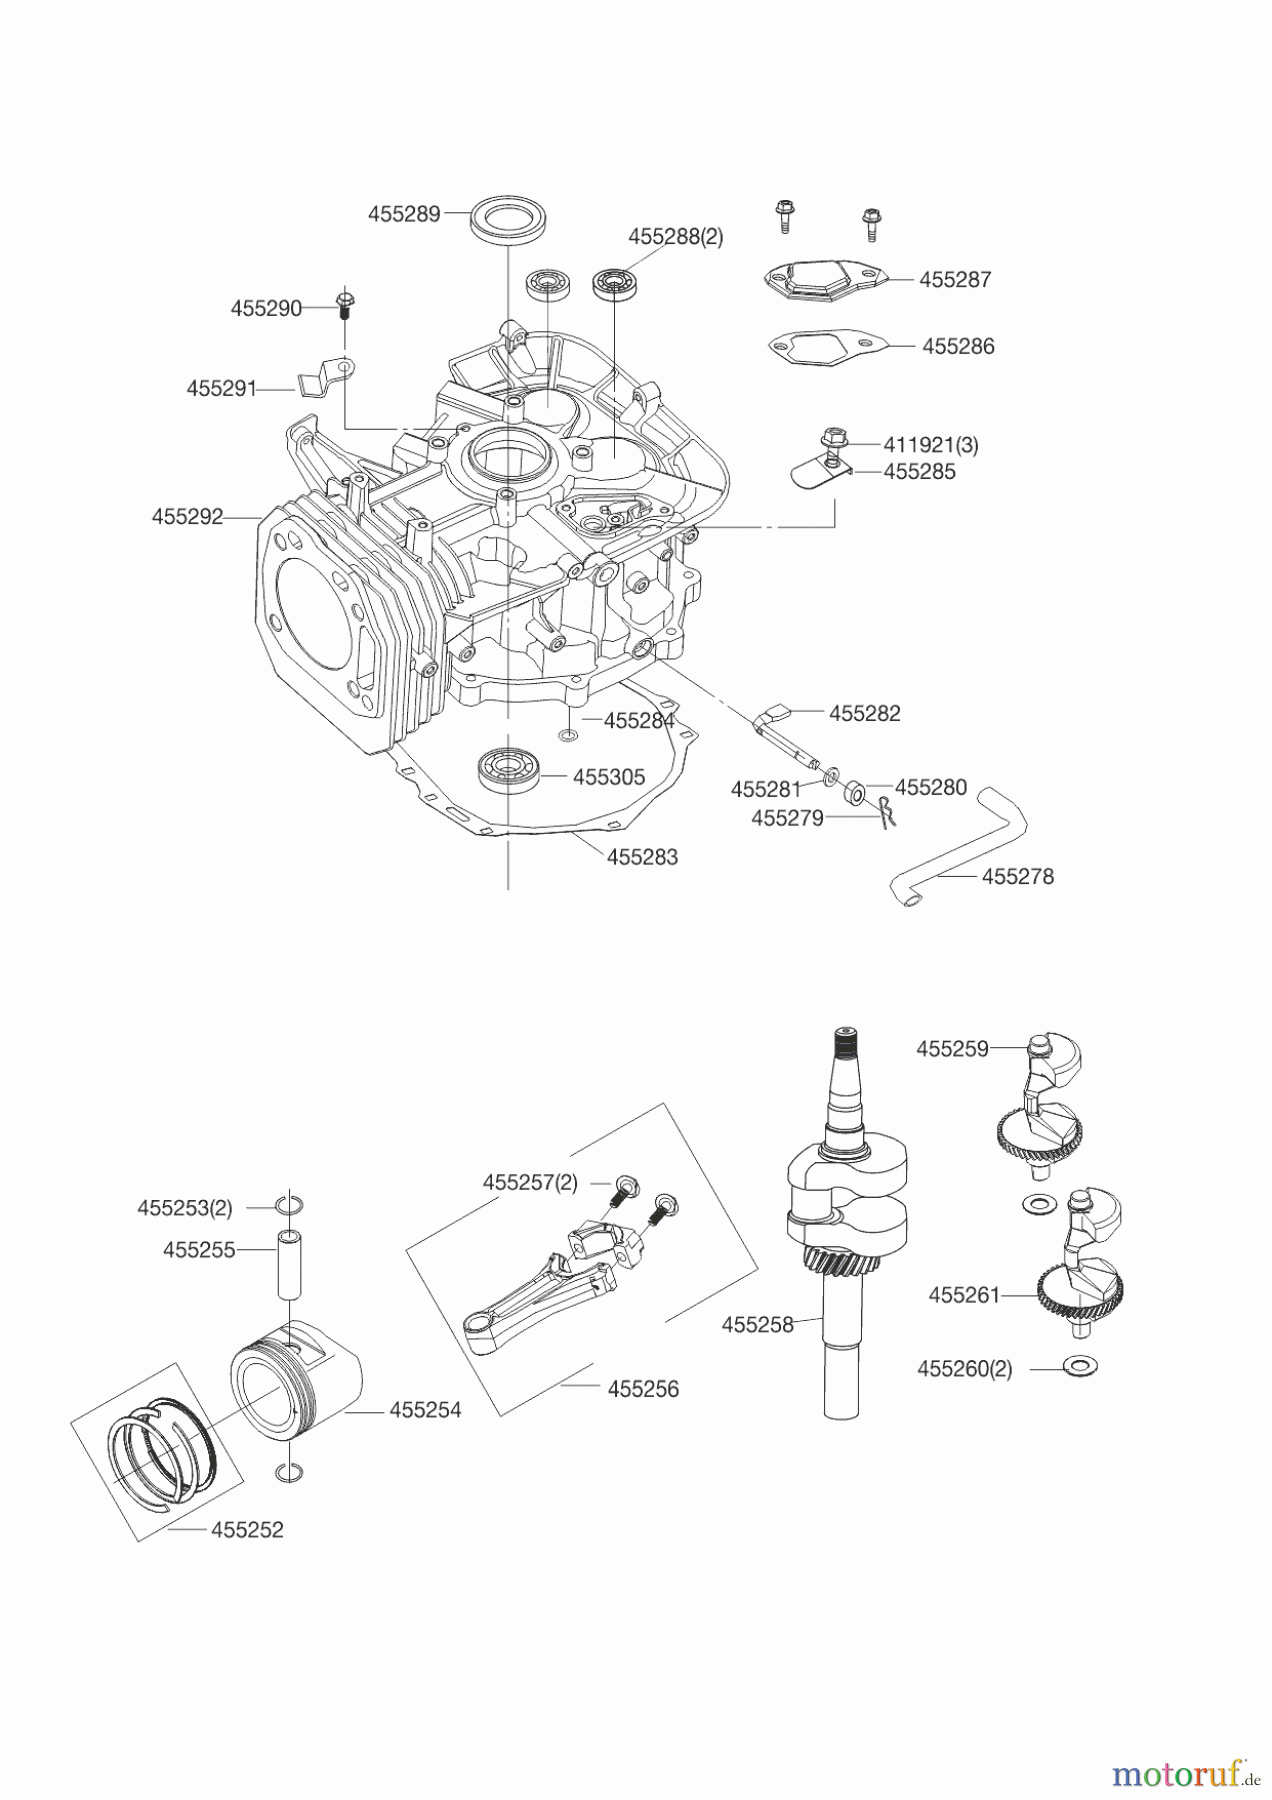  AL-KO Gartentechnik Benzinmotoren BENZIN MOTOR LC1P92F-1 452 CC  05/2013 Seite 2